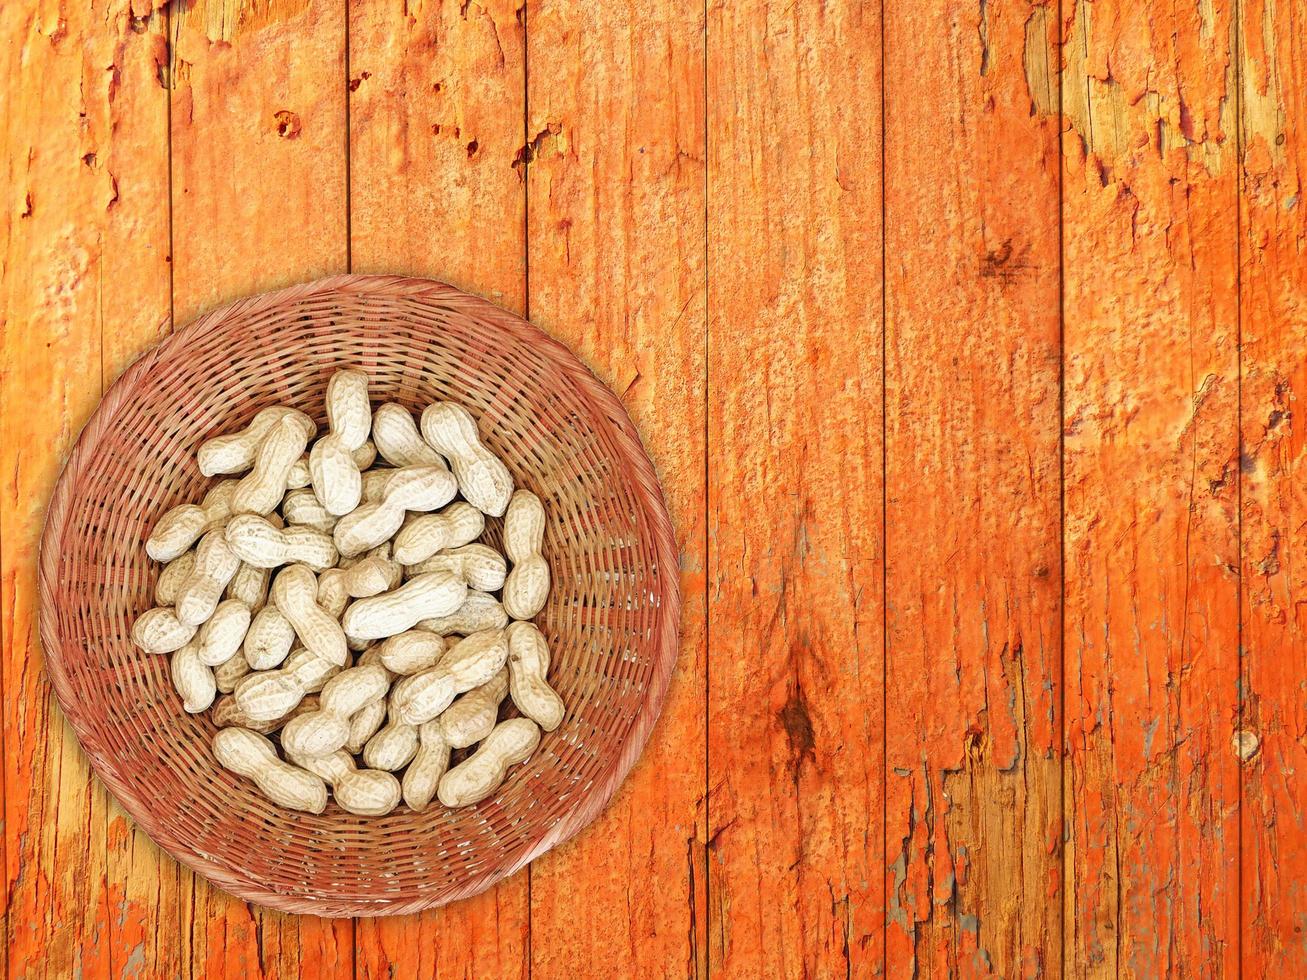 amendoim na cesta de vime no fundo da mesa de madeira foto